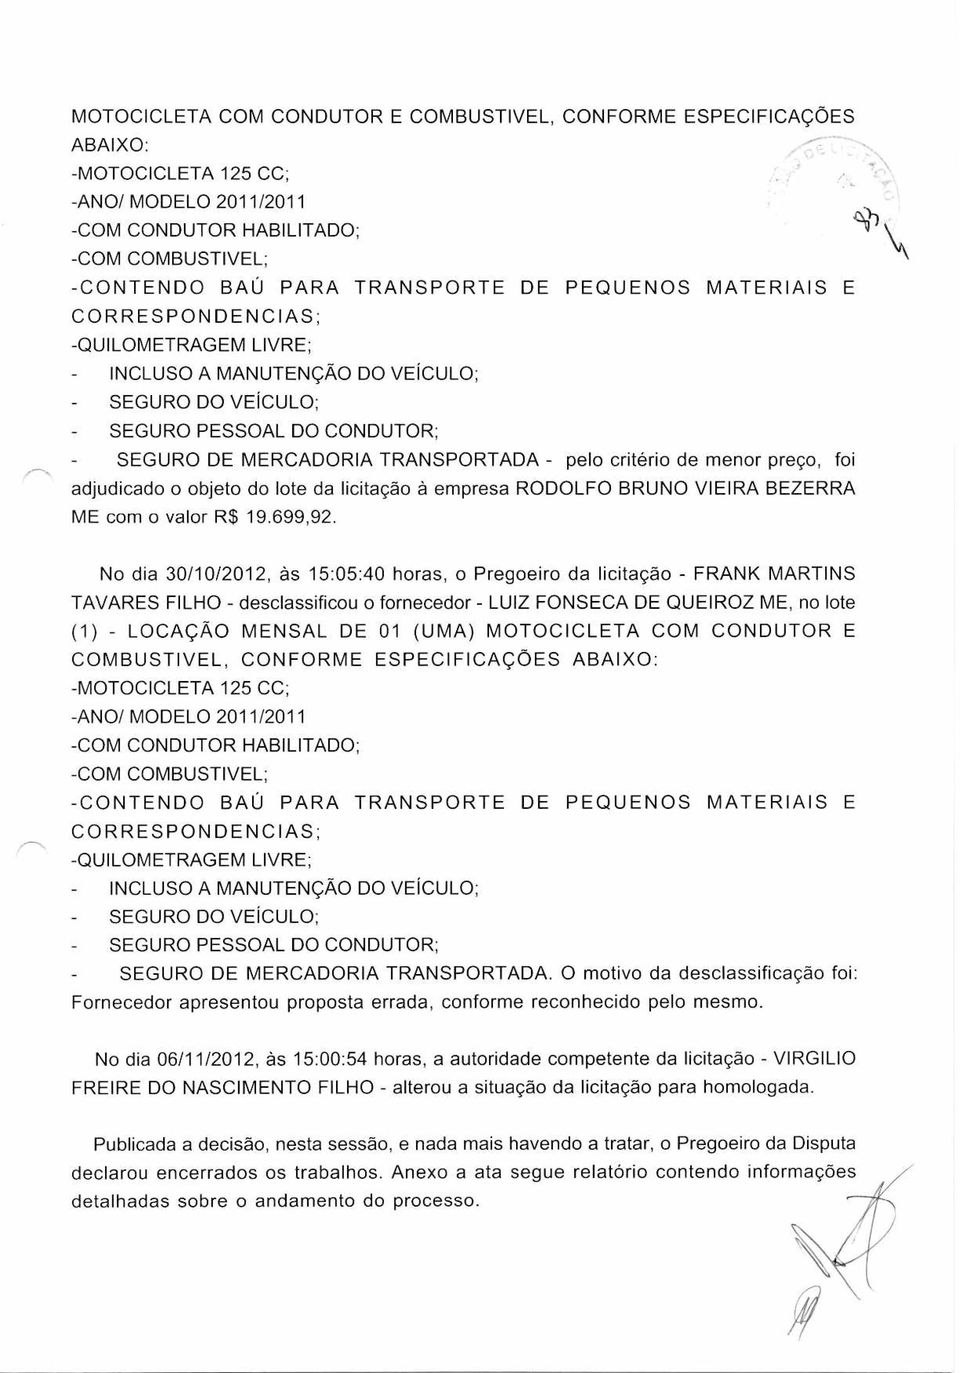 No dia 30/10/2012, às 15:05:40 horas, o Pregoeiro da licitação - FRANK MARTINS TAVARES FILHO - desclassificou o fornecedor - LUIZ FONSECA DE QUEIROZ ME, no lote (1) - LOCAÇÃO MENSAL DE 01 (UMA)